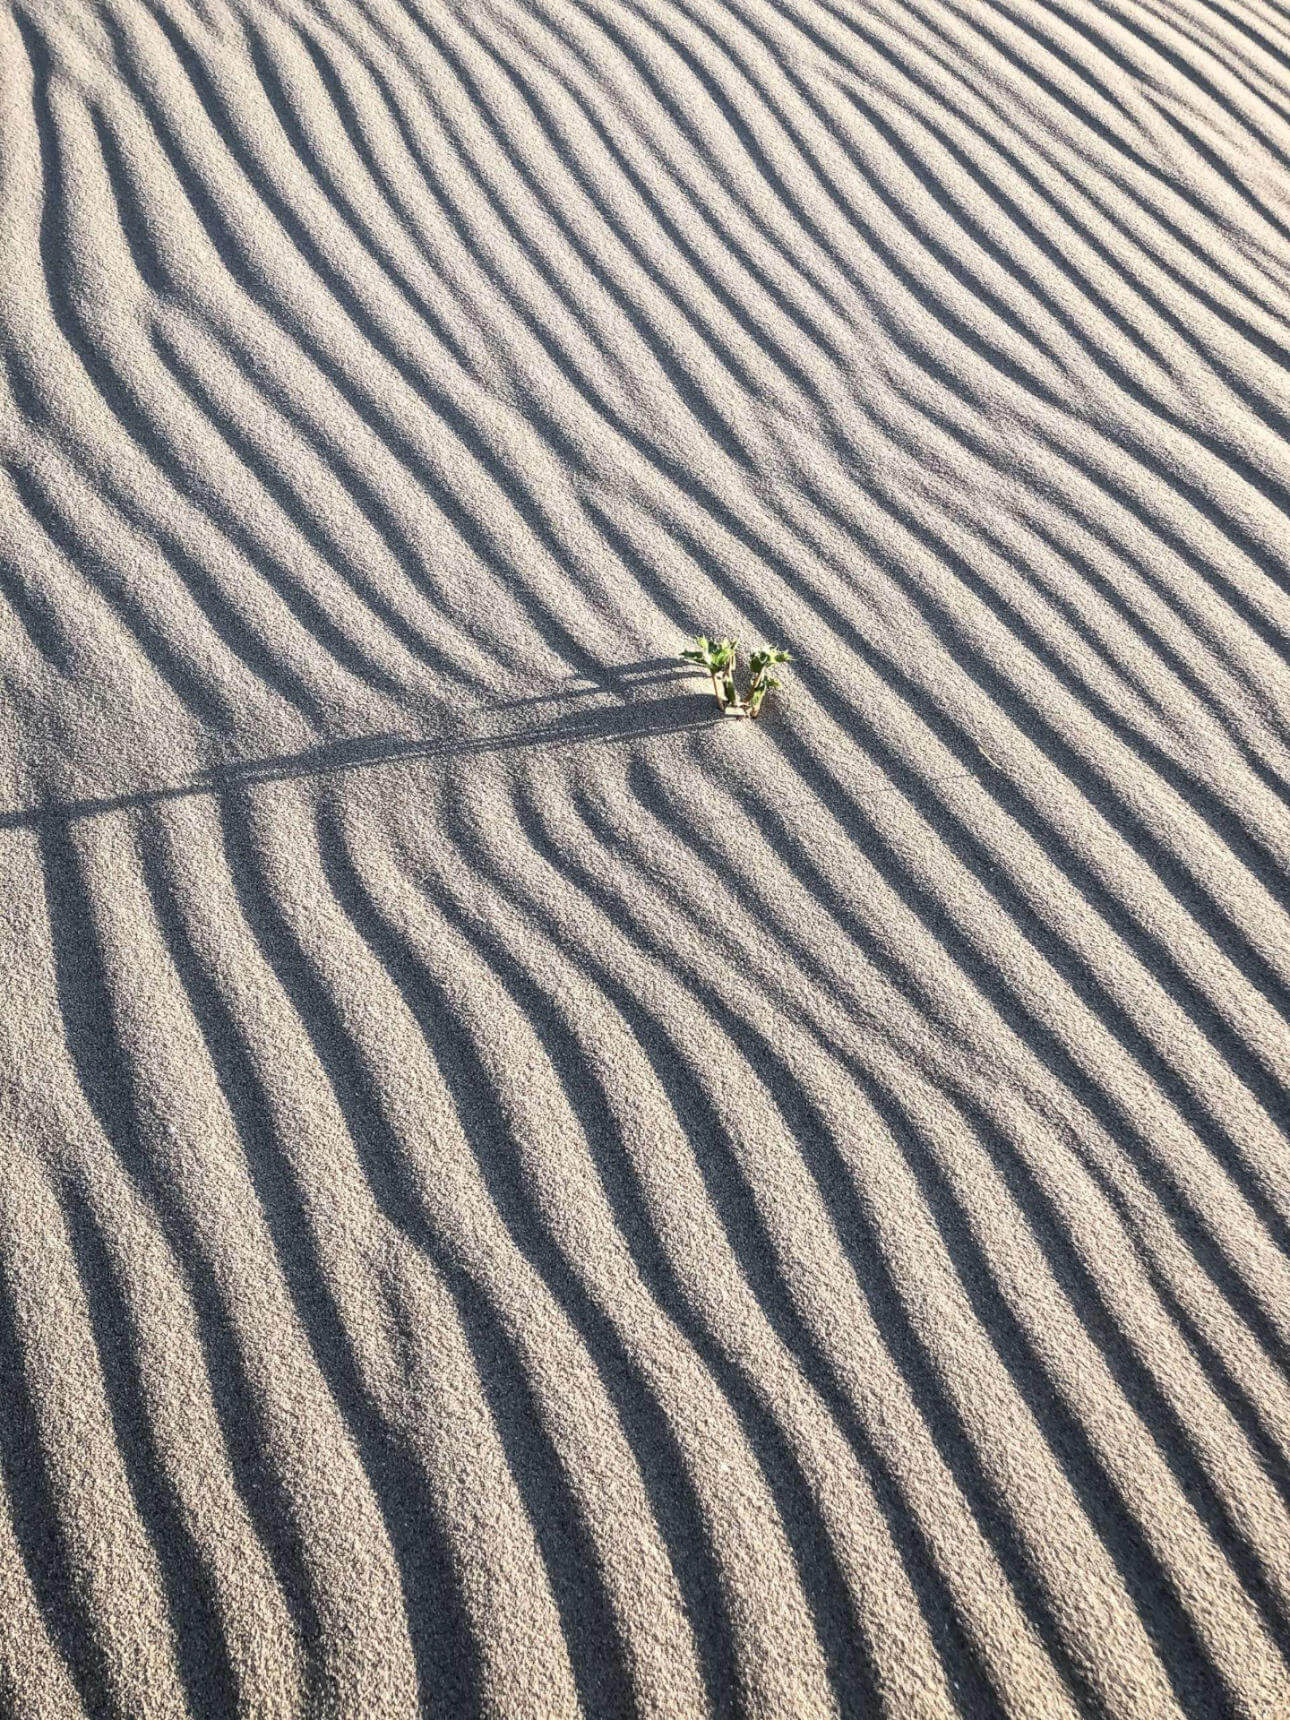 Eine Pflanze die aus dem Sand ragt an einem Strand in den Niederlanden